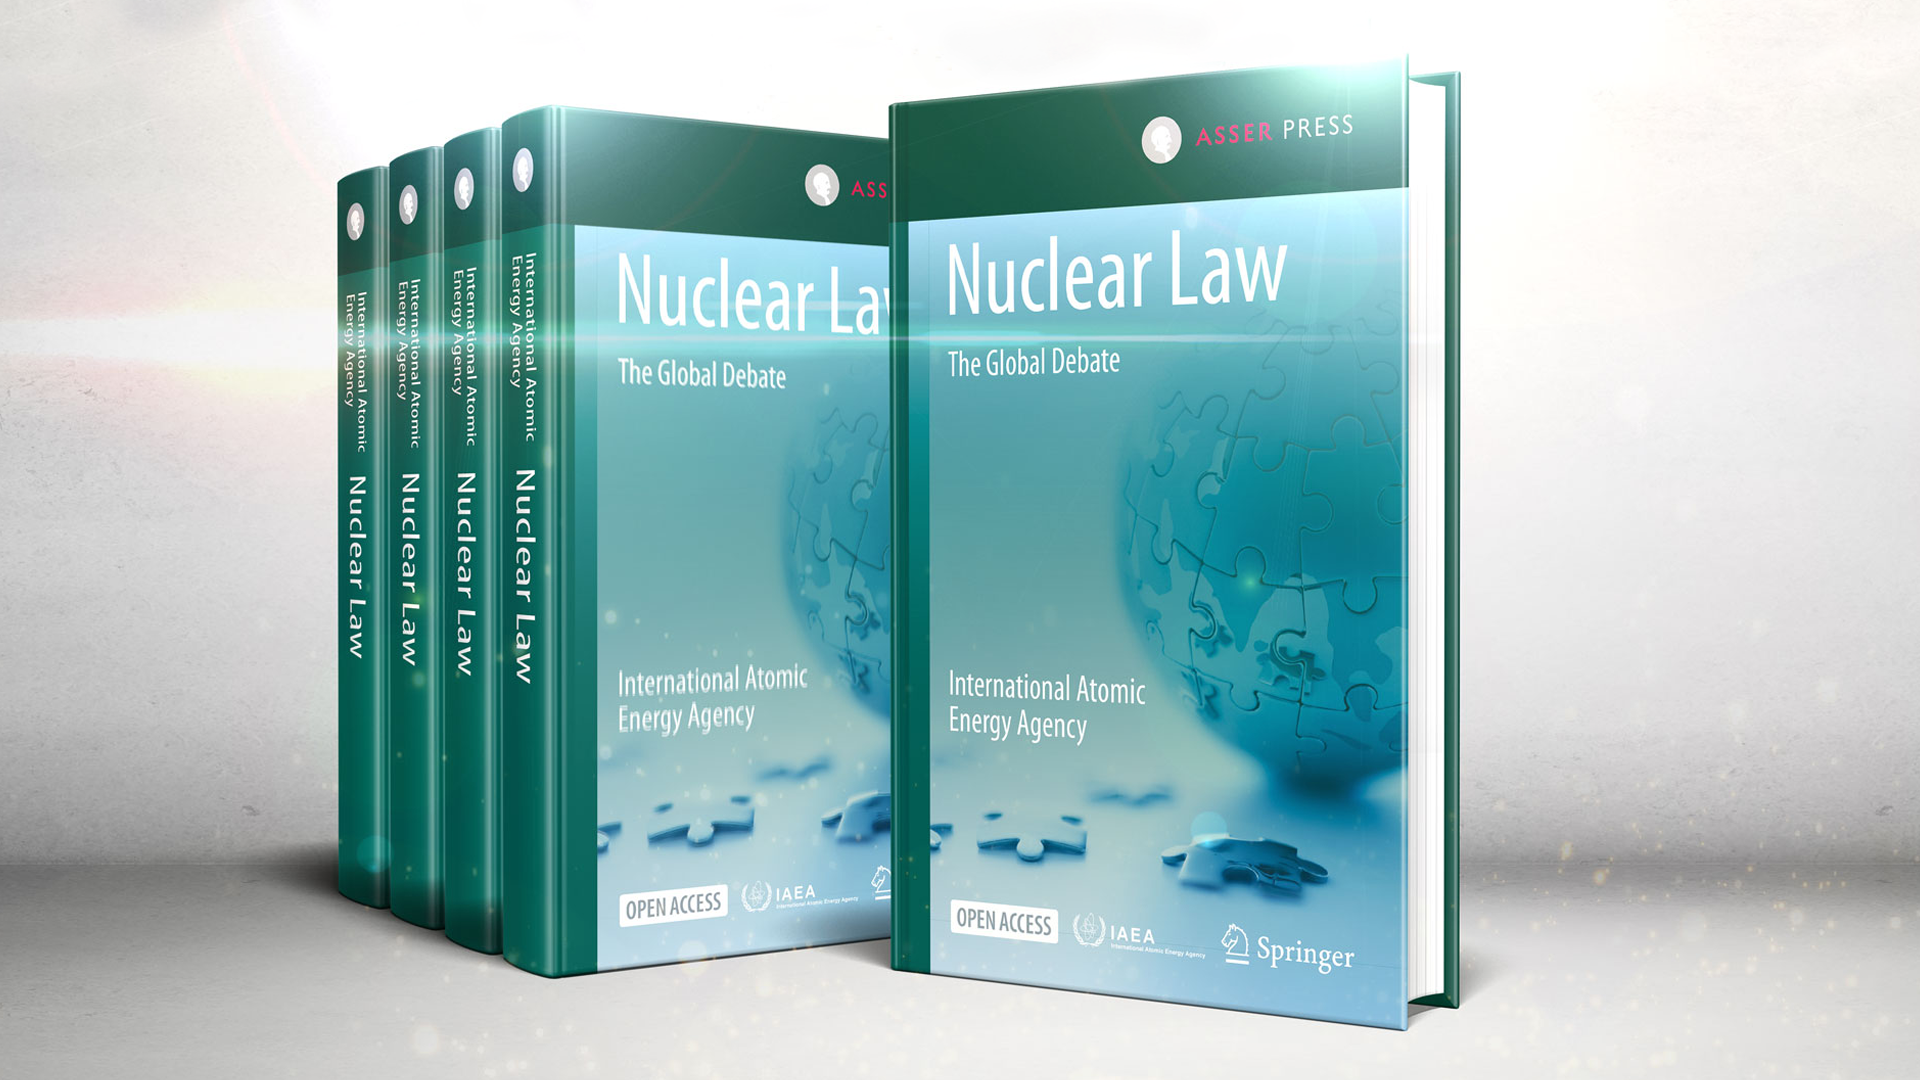 IAEA Publishes Free e-Book on Nuclear Law | IAEA - International Atomic Energy Agency